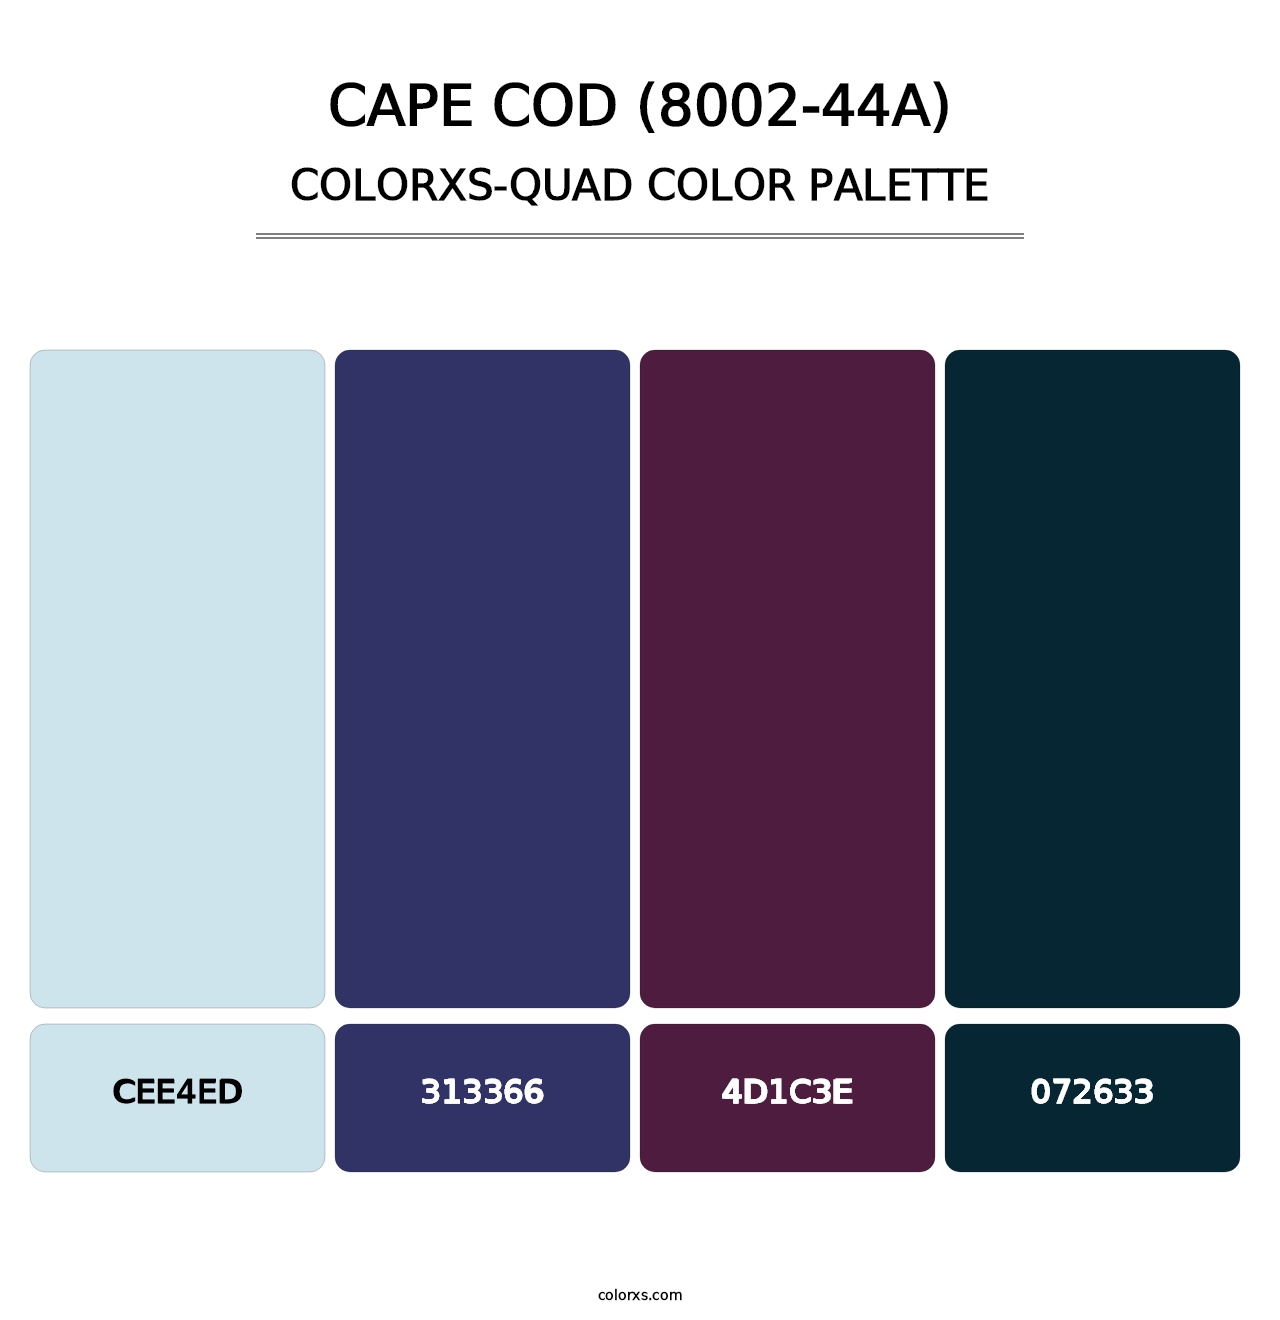 Cape Cod (8002-44A) - Colorxs Quad Palette